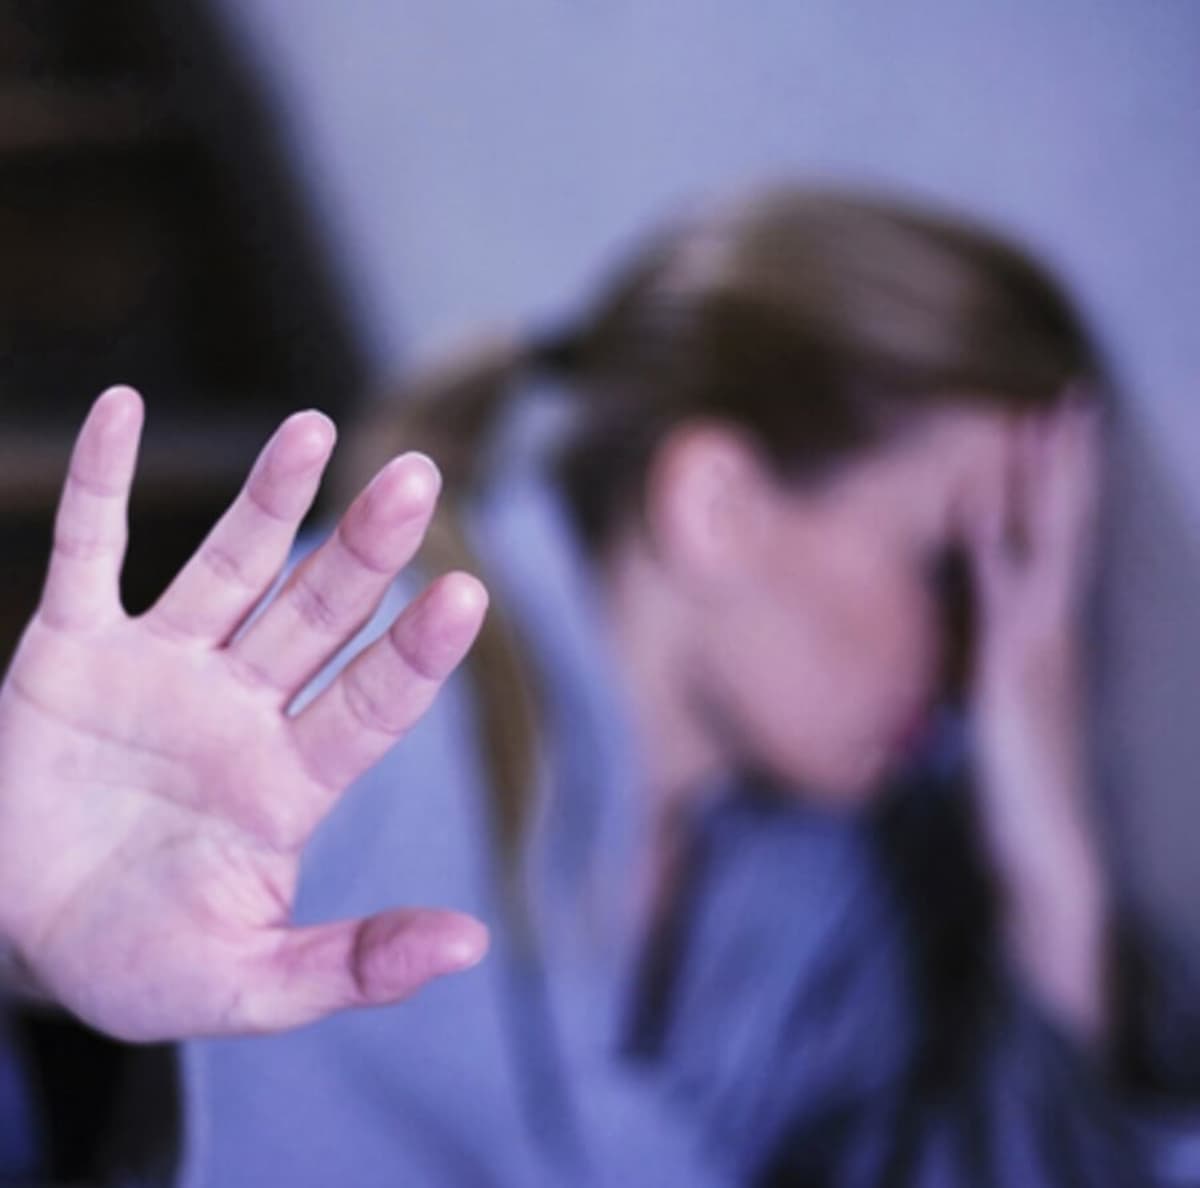 Abus émotionnel : Thérapie relationnelle pour mettre fin à l'abus